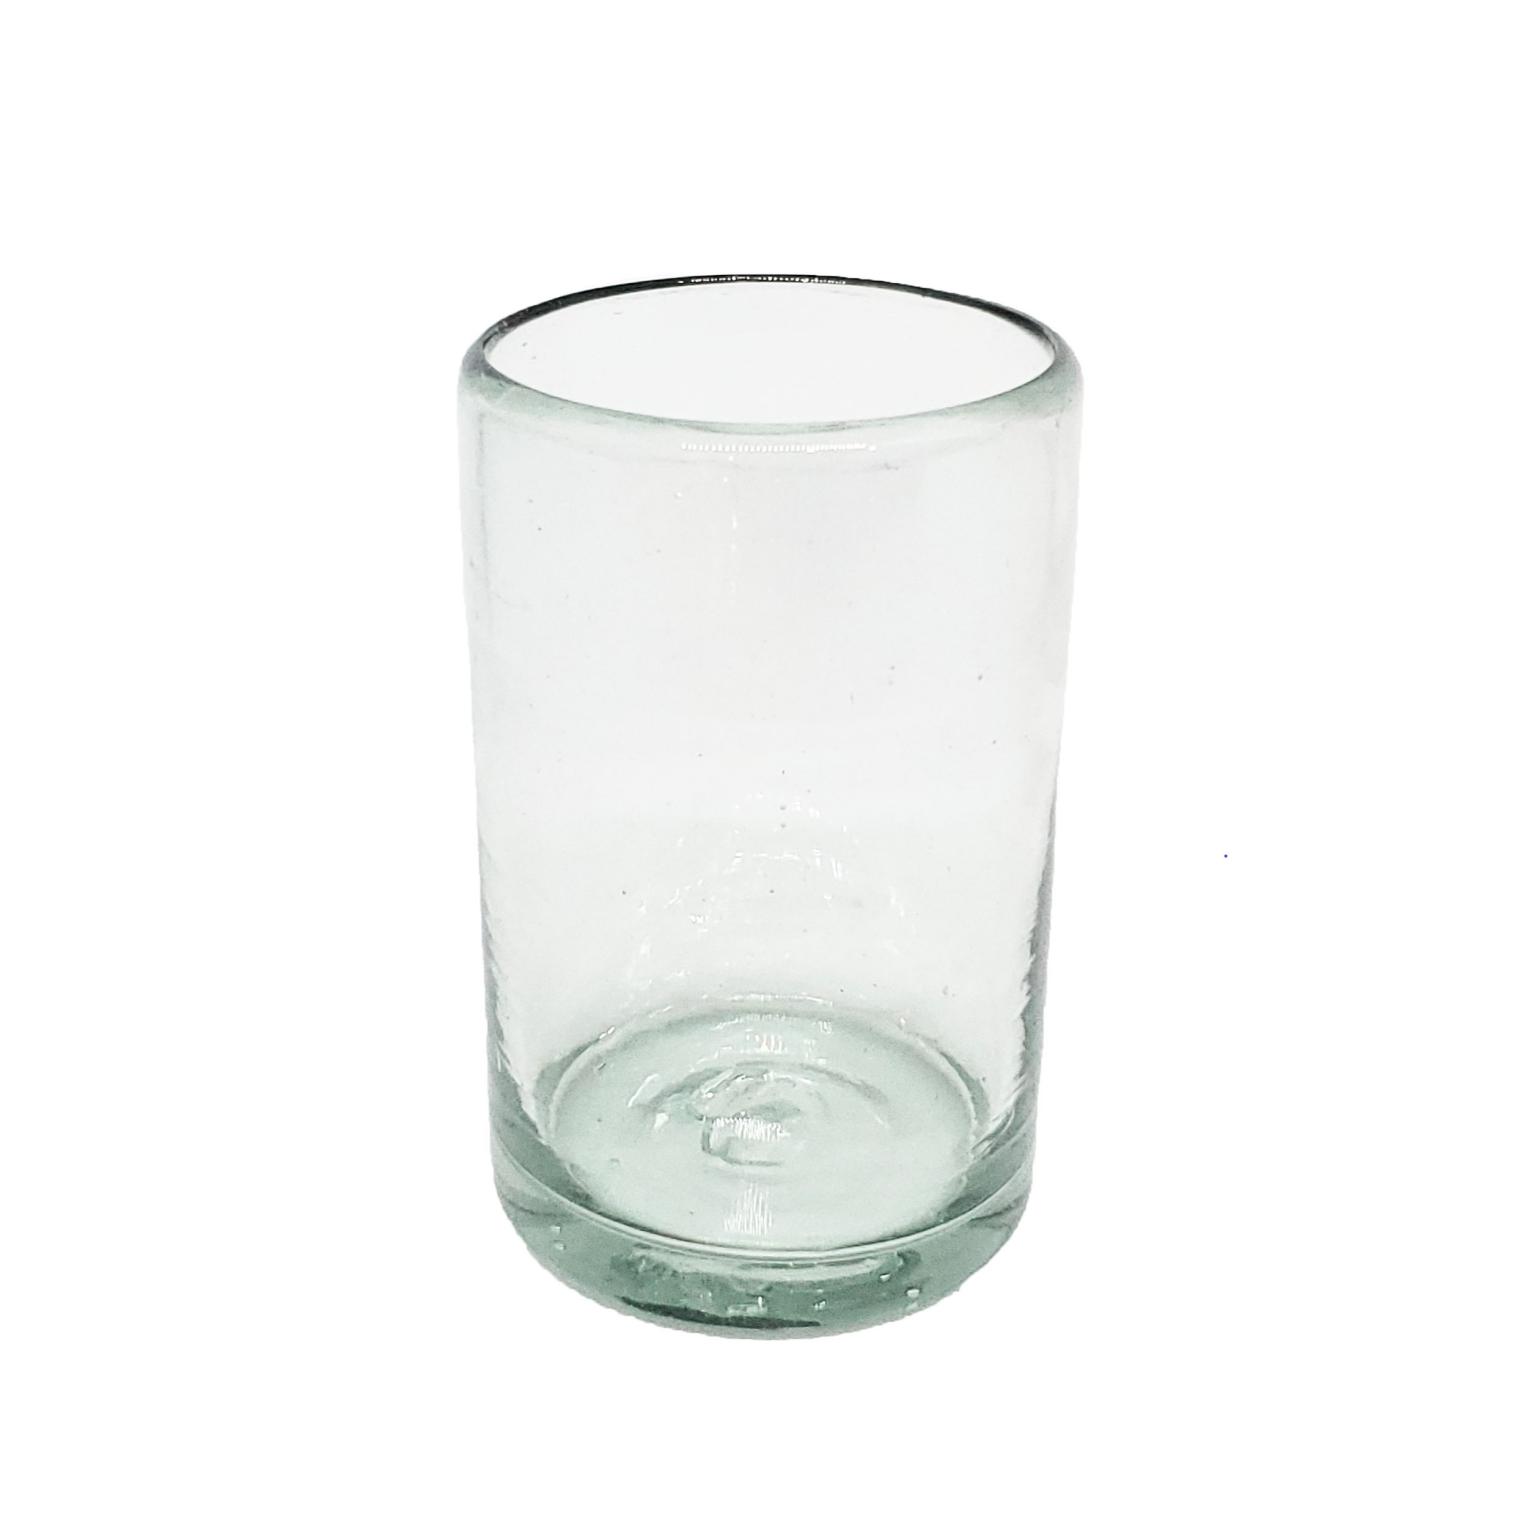 Ofertas / vasos Jugo 9oz Transparentes, 9 oz, Vidrio Reciclado, Libre de Plomo y Toxinas / stos artesanales vasos le darn un toque clsico a su bebida favorita.